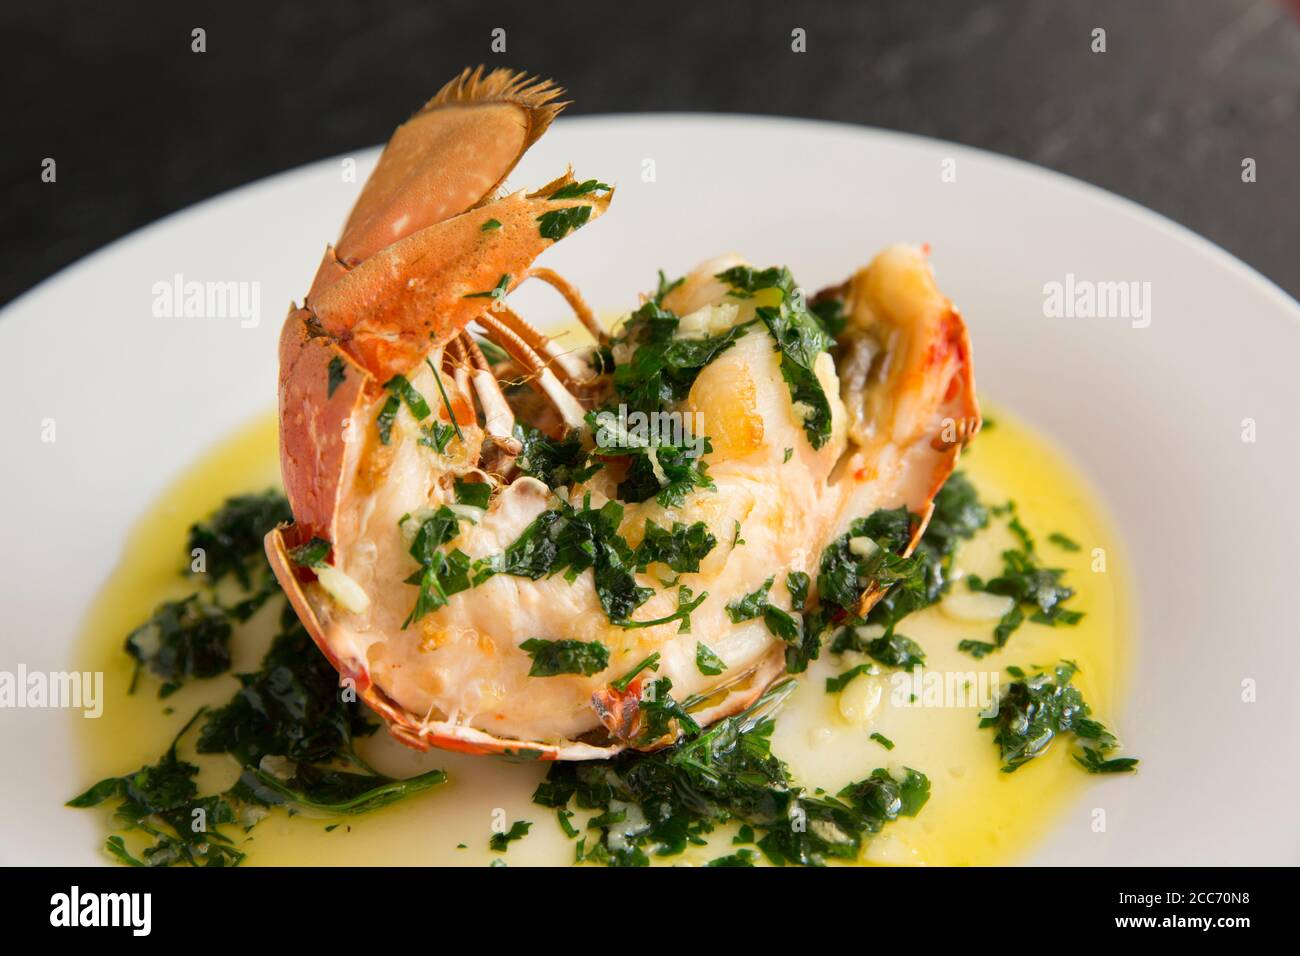 Une demi-queue de homard, Homarus gammarus, qui a été grillée et arrosée d'une sauce au beurre, à l'ail et au persil. Le homard a été pris dans l'Engli Banque D'Images